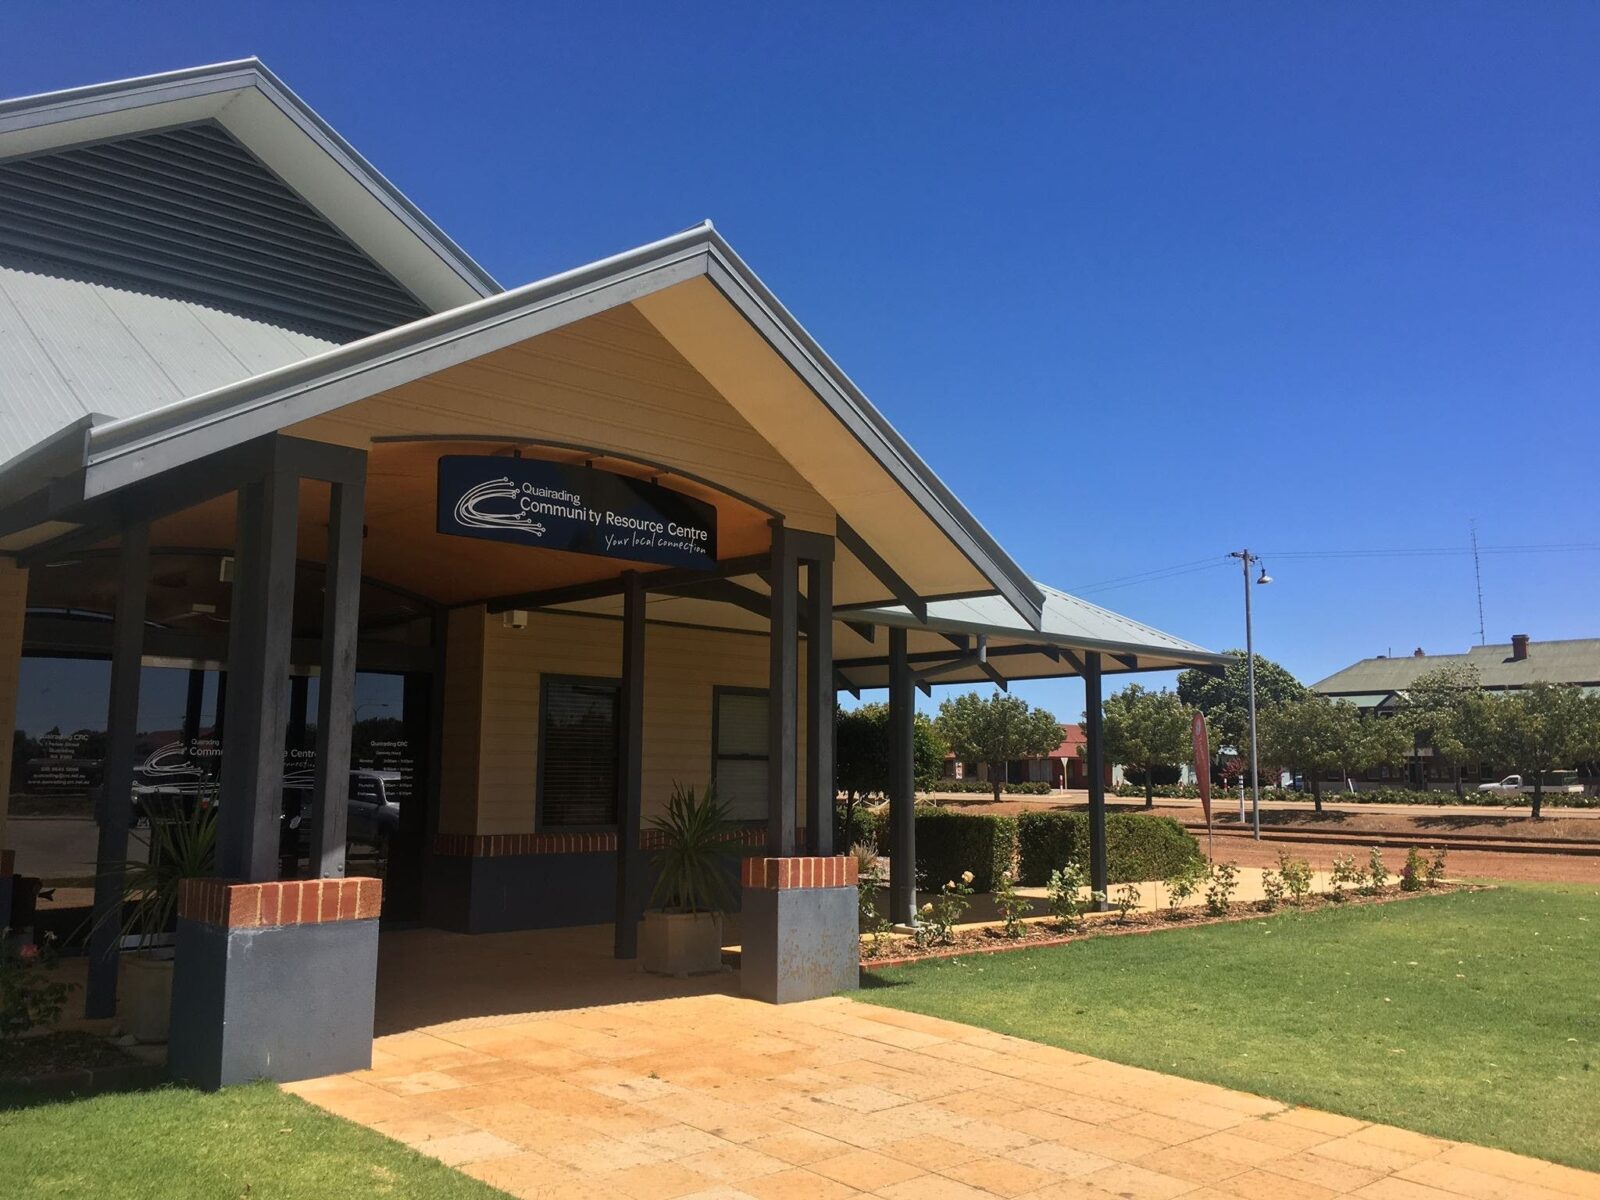 Quairading CRC and Visitor Centre, Quairading, Western Australia